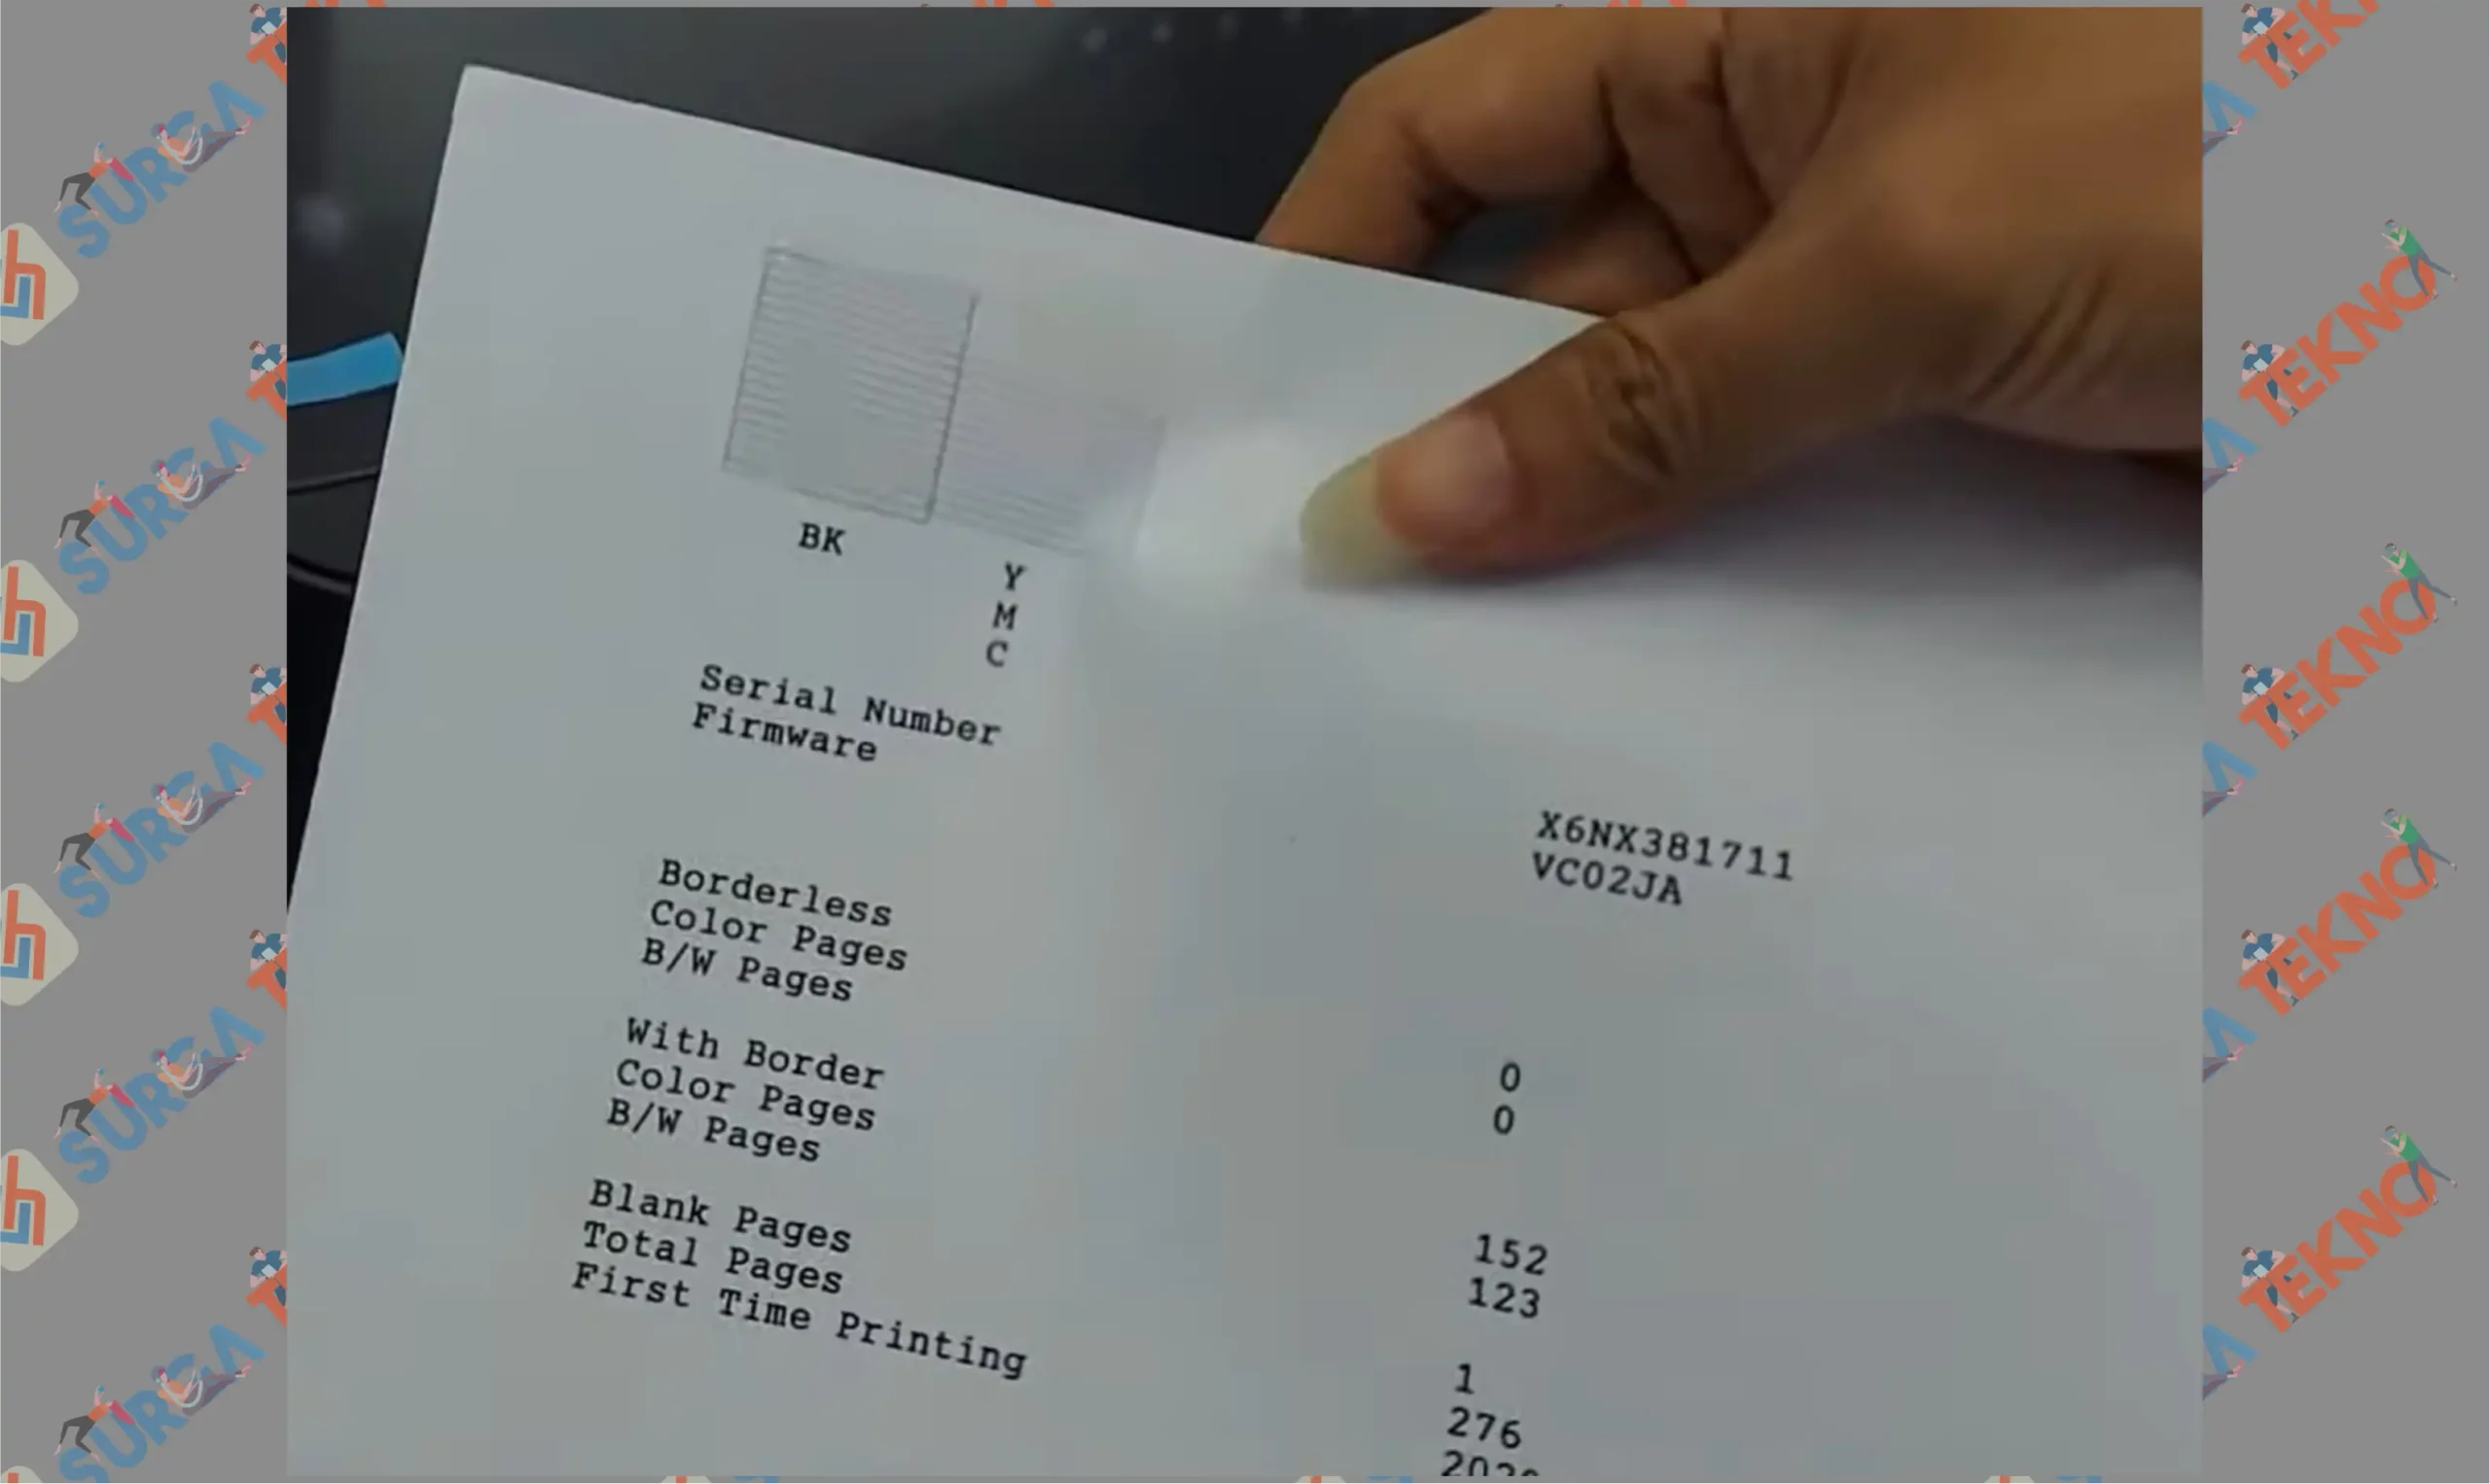 8 Printer akan Cetak - Cara Mengatasi Nozzle Check is recommended di Epson L3110